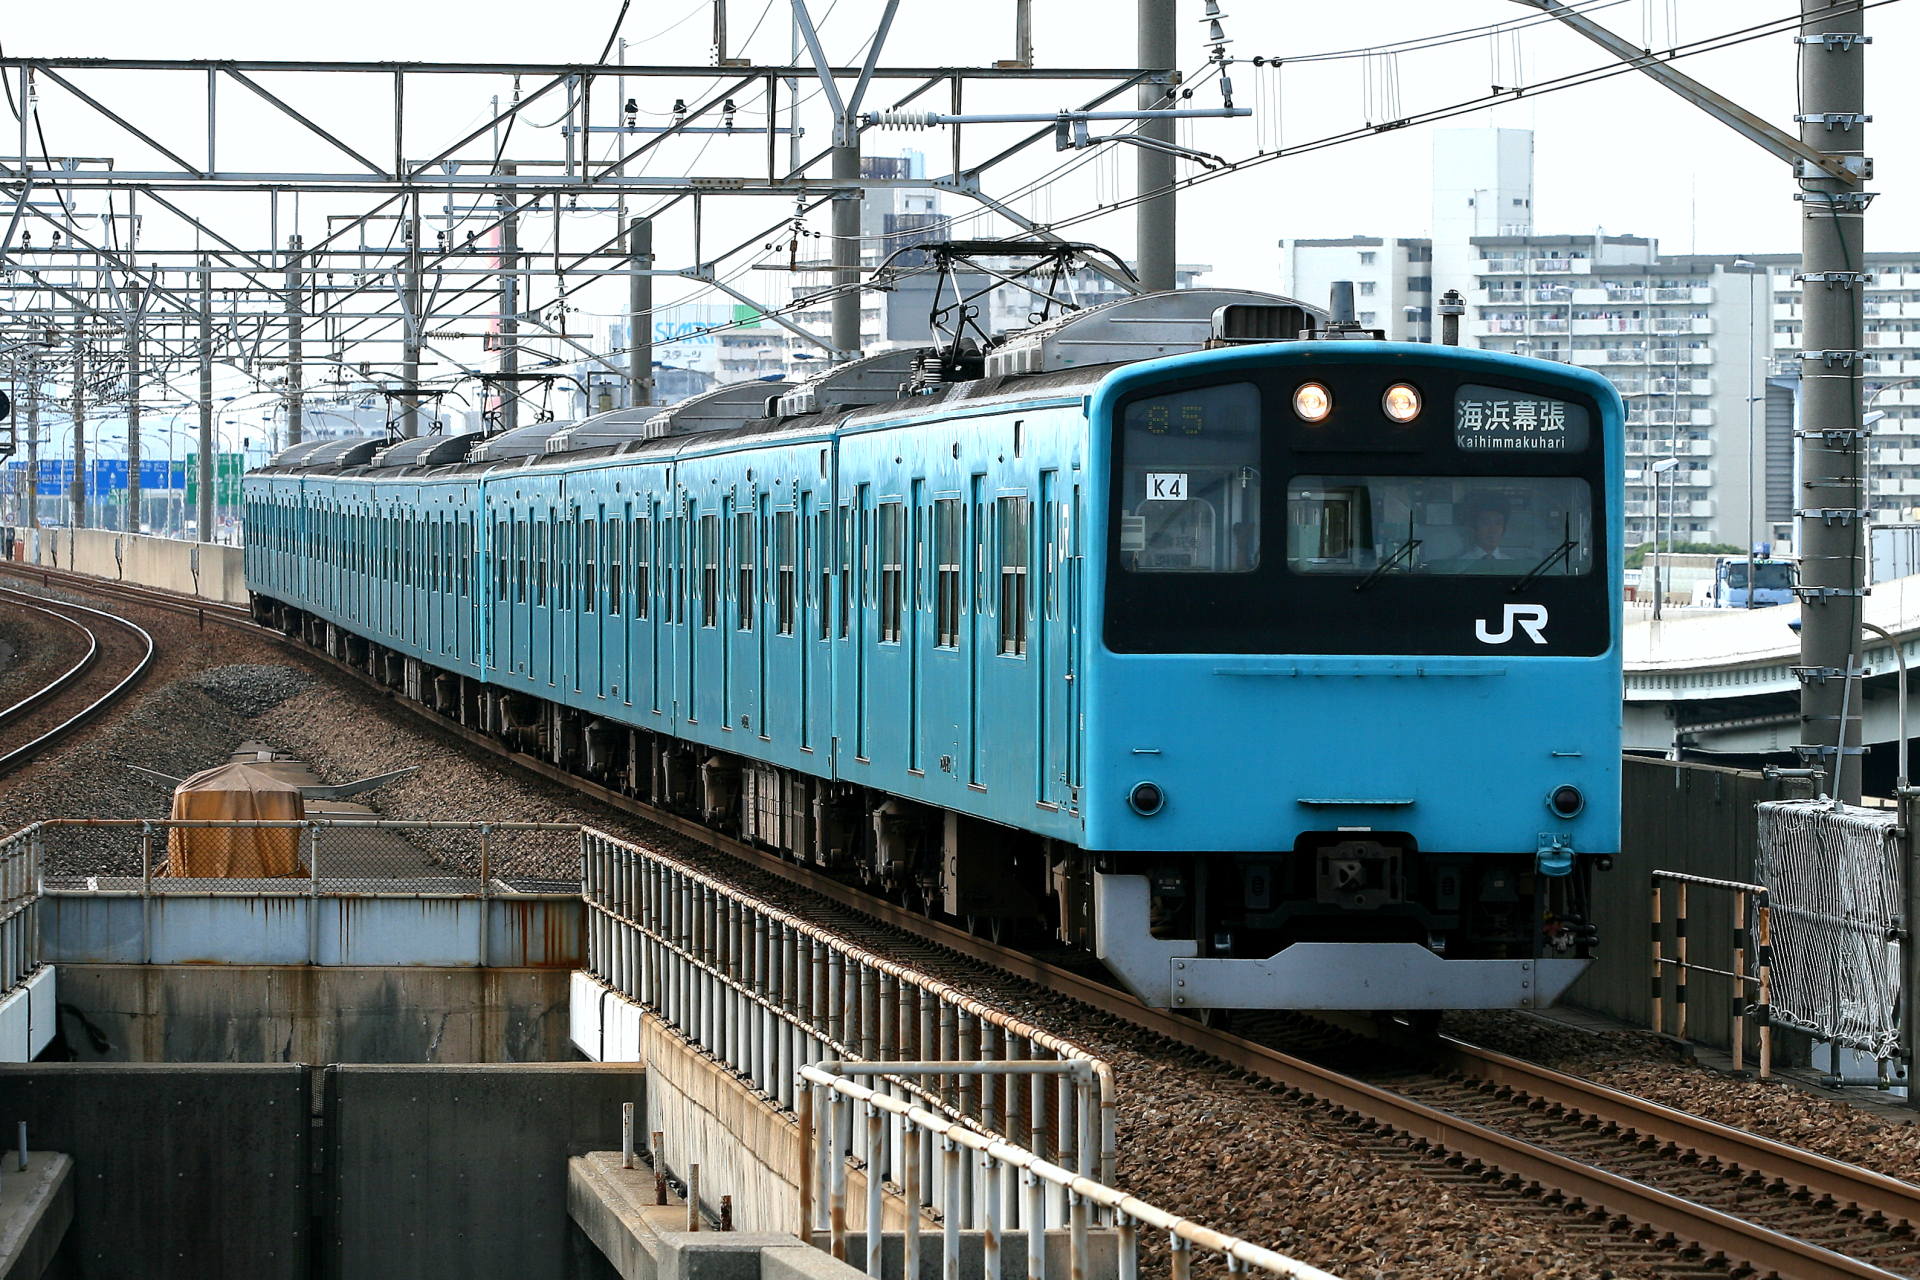 京葉線を走るスカイブルーの1系 Odapedia 小田急を中心とした鉄道に関するブログメディア